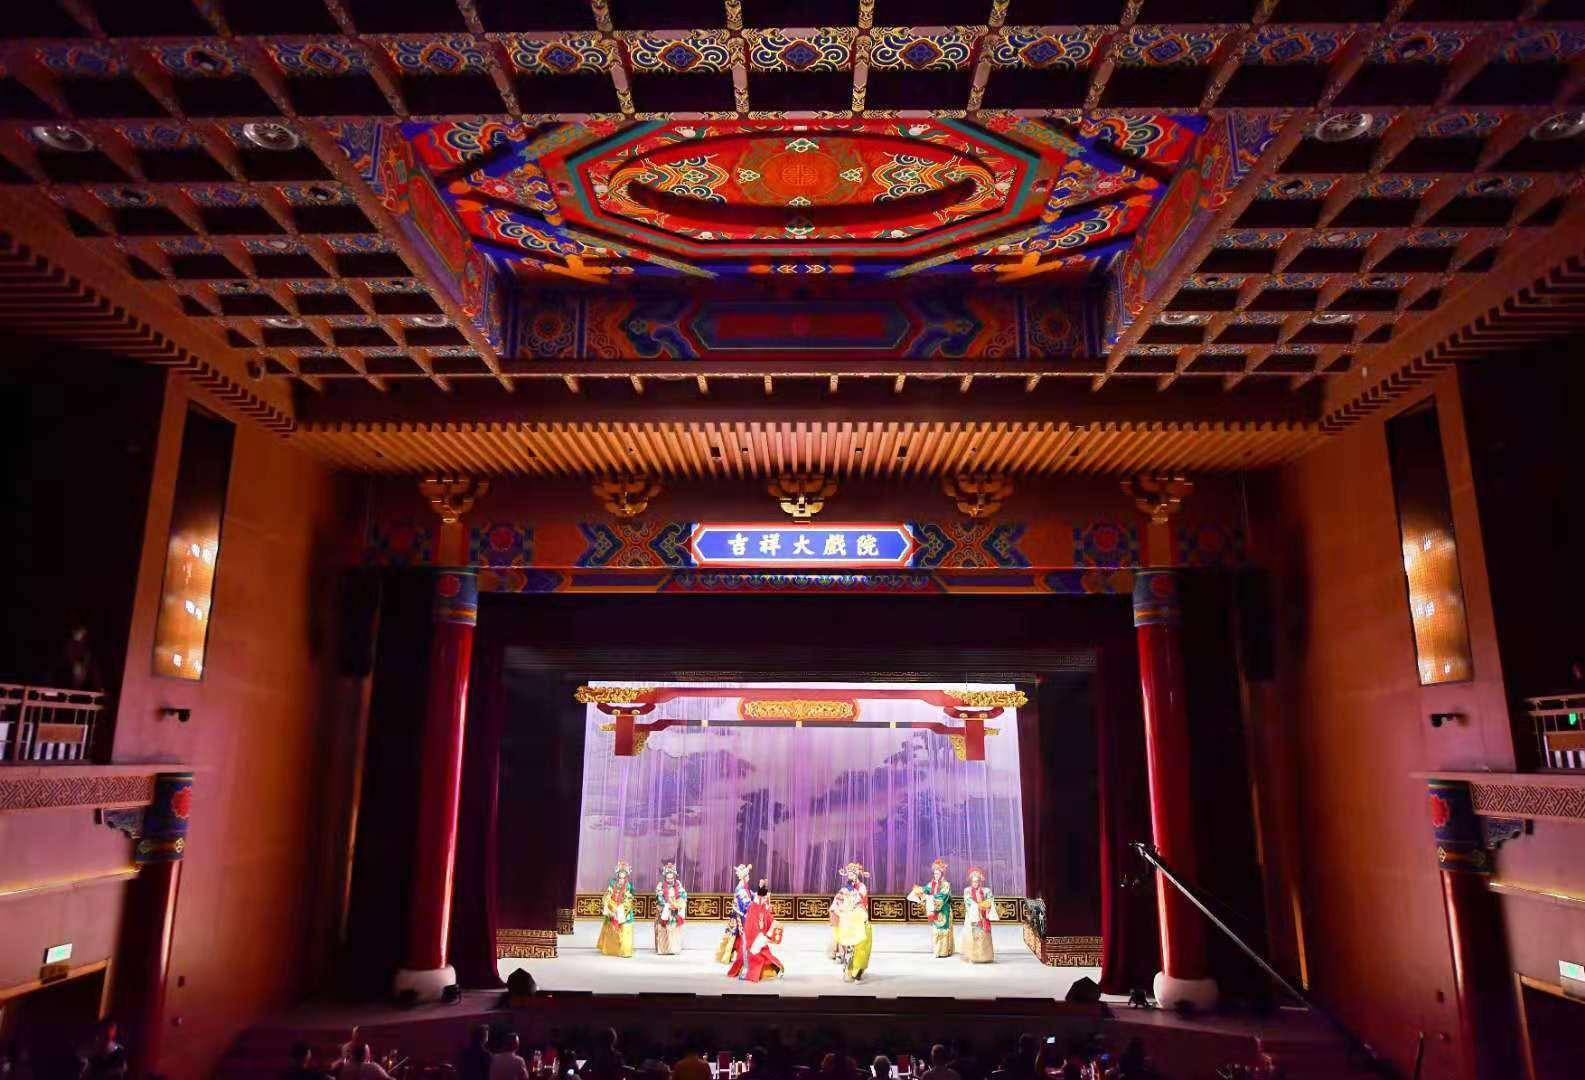 百年戏院吉祥大戏院重张将携手兄弟戏院打造京剧剧场集群